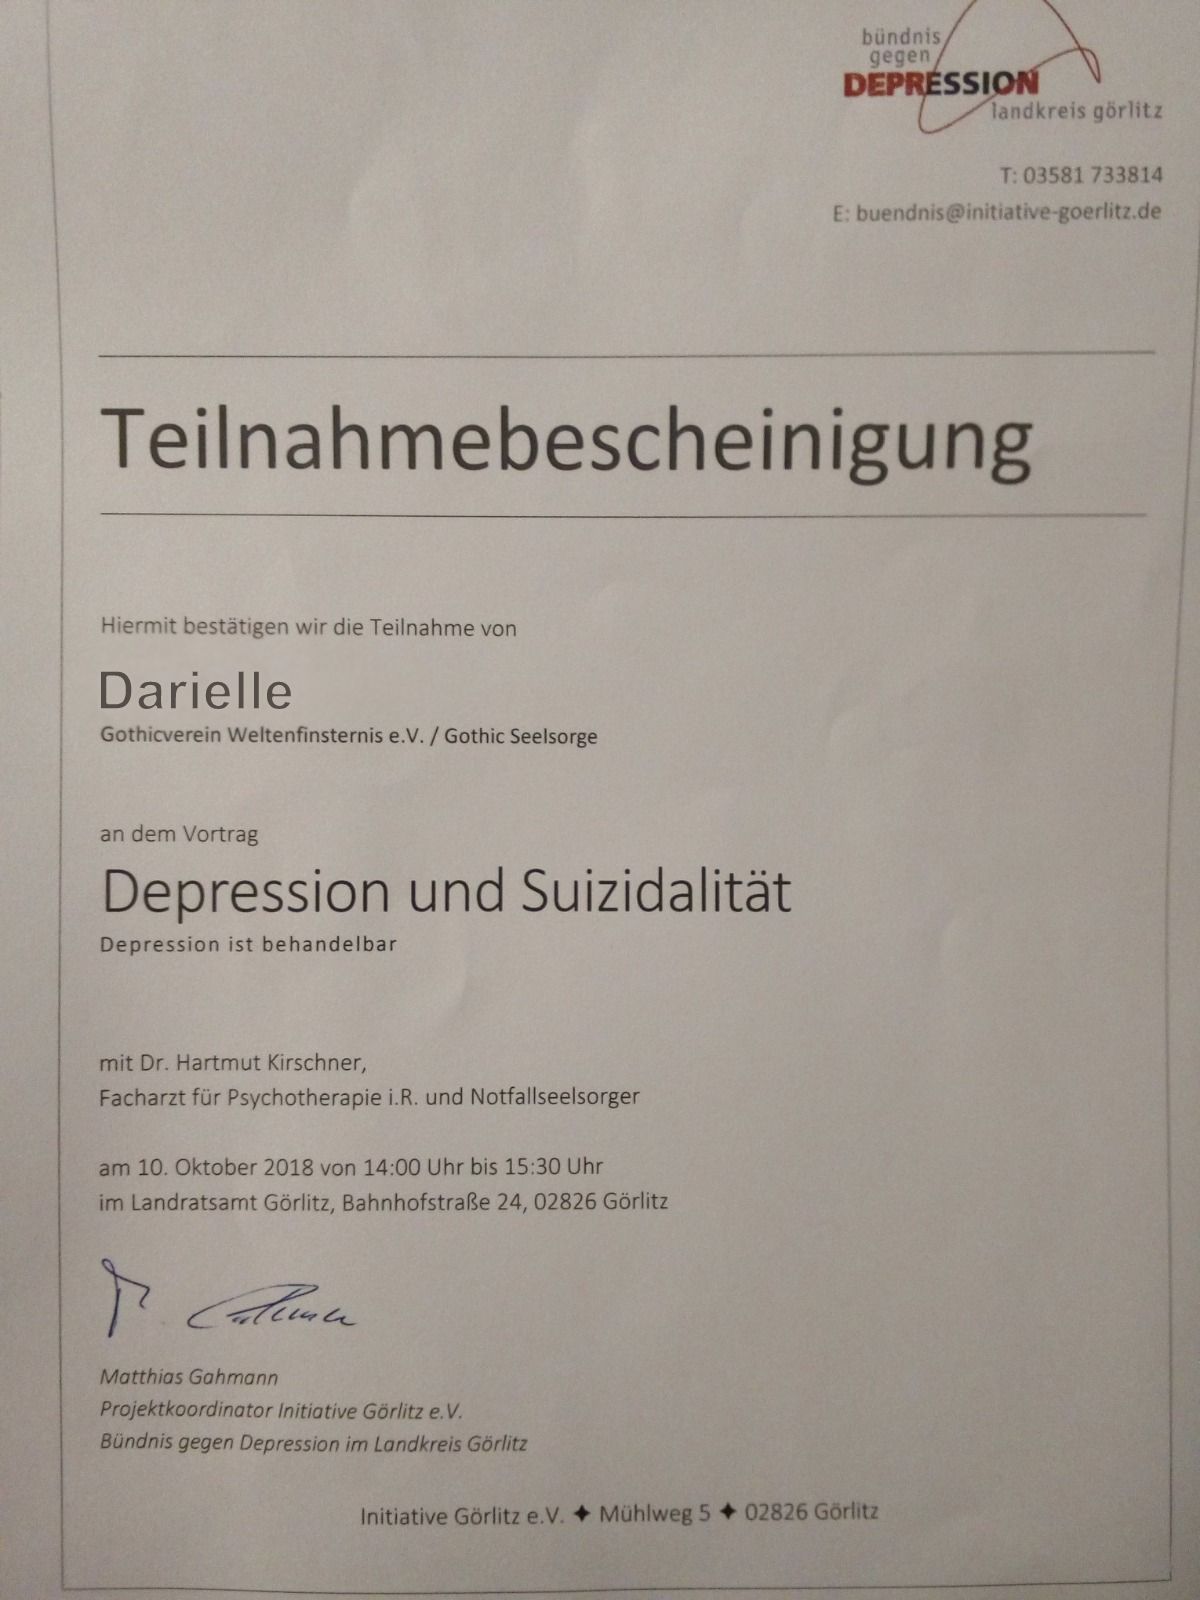 Teilnahmebescheinigung für Darielle beim Vortrag Depression und Suizidalität